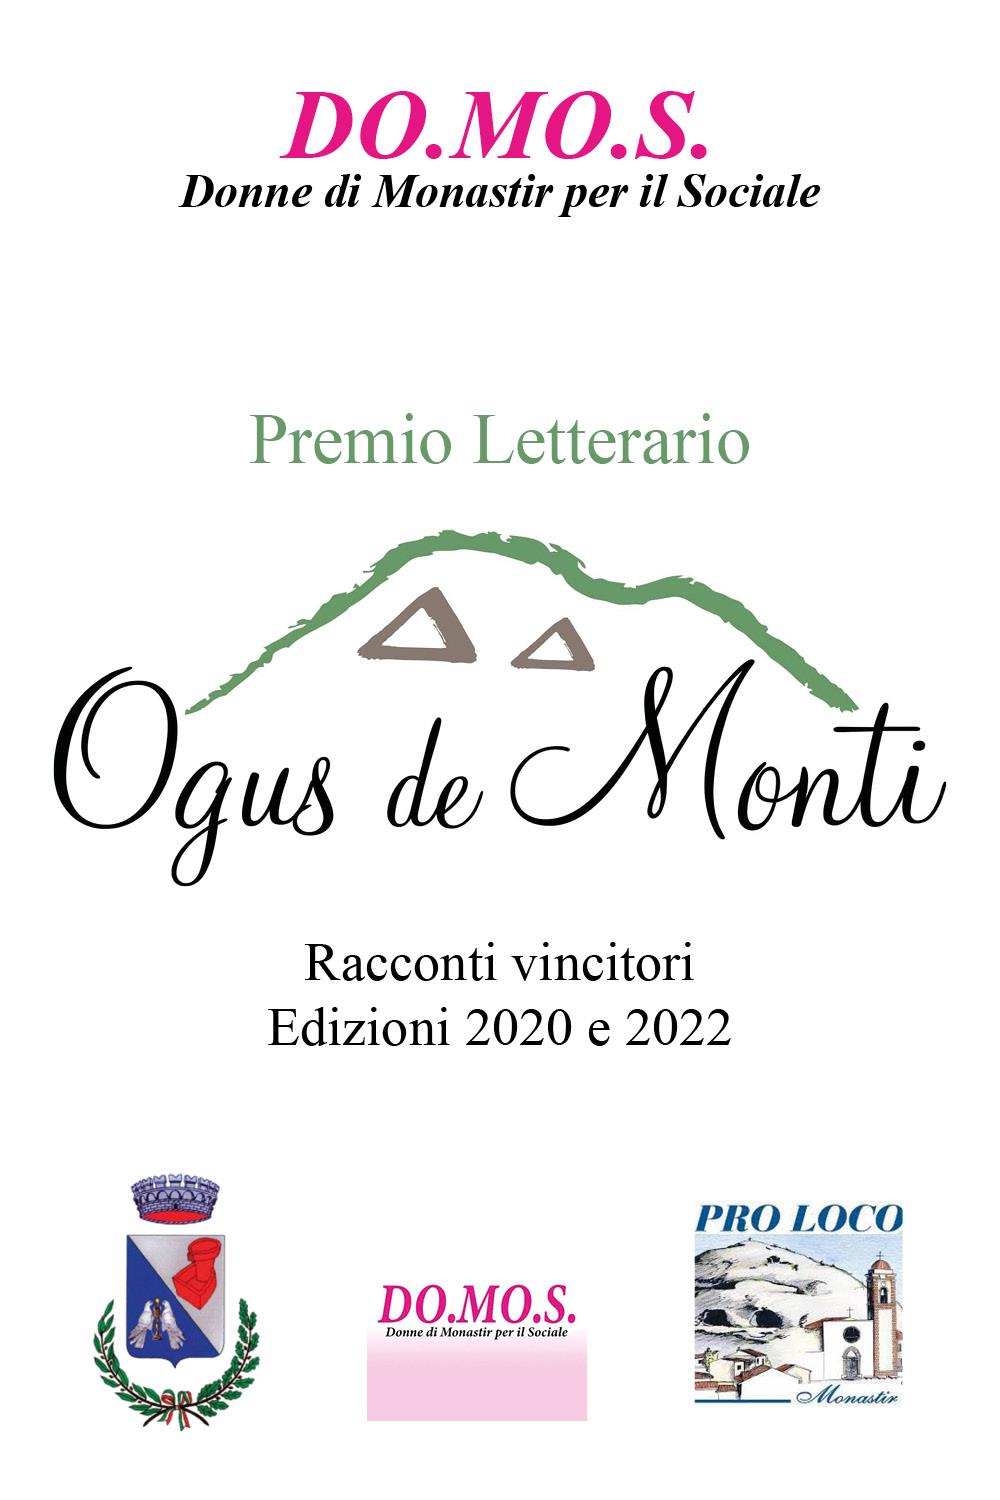 Premio Letterario Ogus de Monti - Racconti vincitori 2020/2022